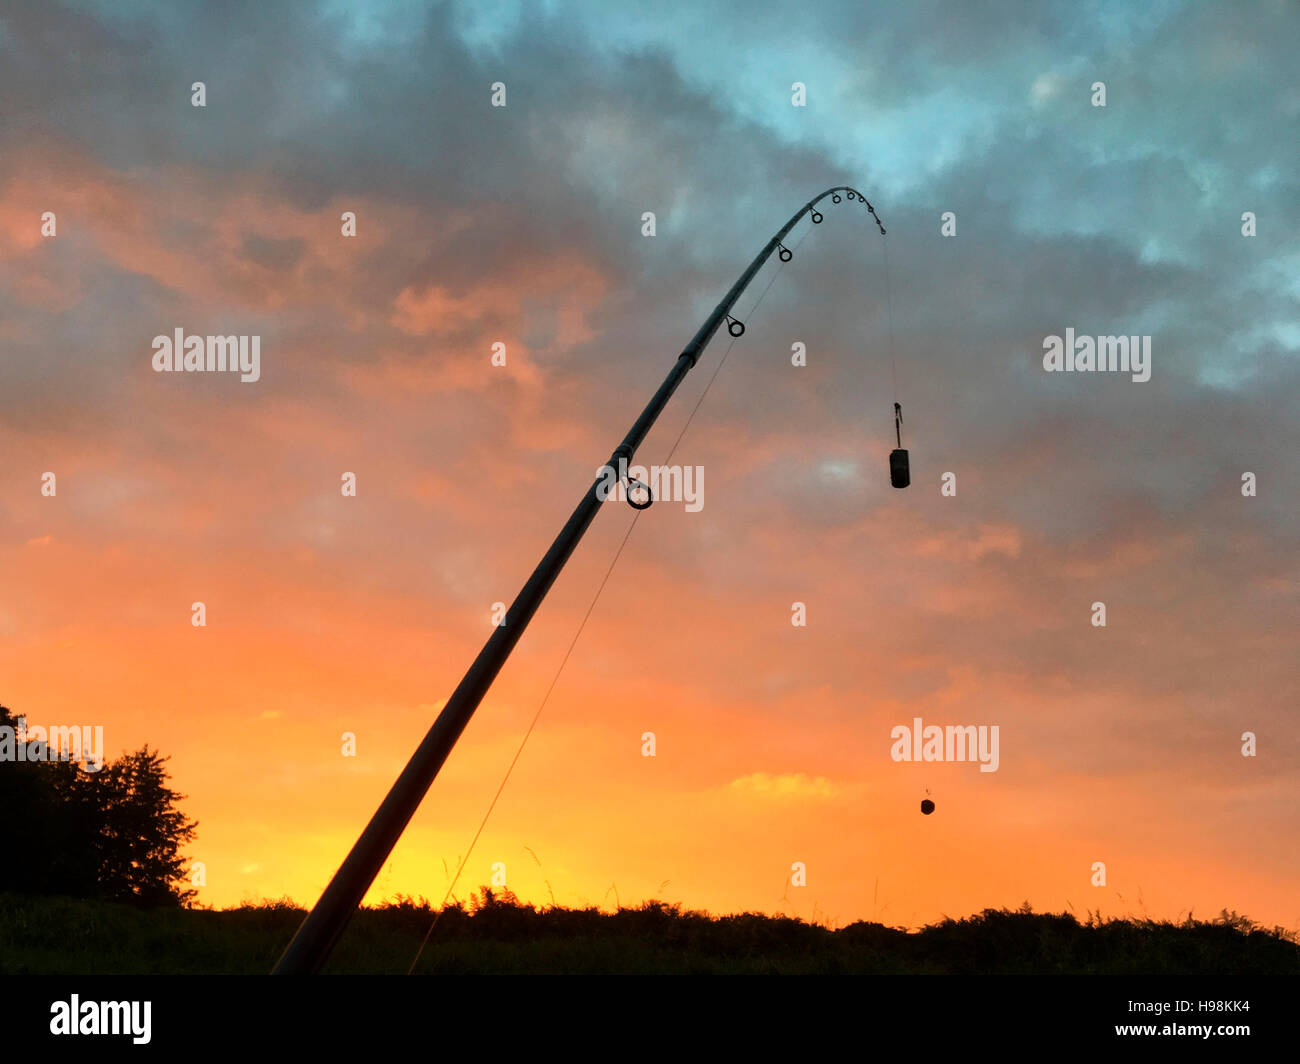 https://c8.alamy.com/comp/H98KK4/angler-fishing-for-barbel-at-sunset-on-river-wye-at-the-warren-hay-H98KK4.jpg